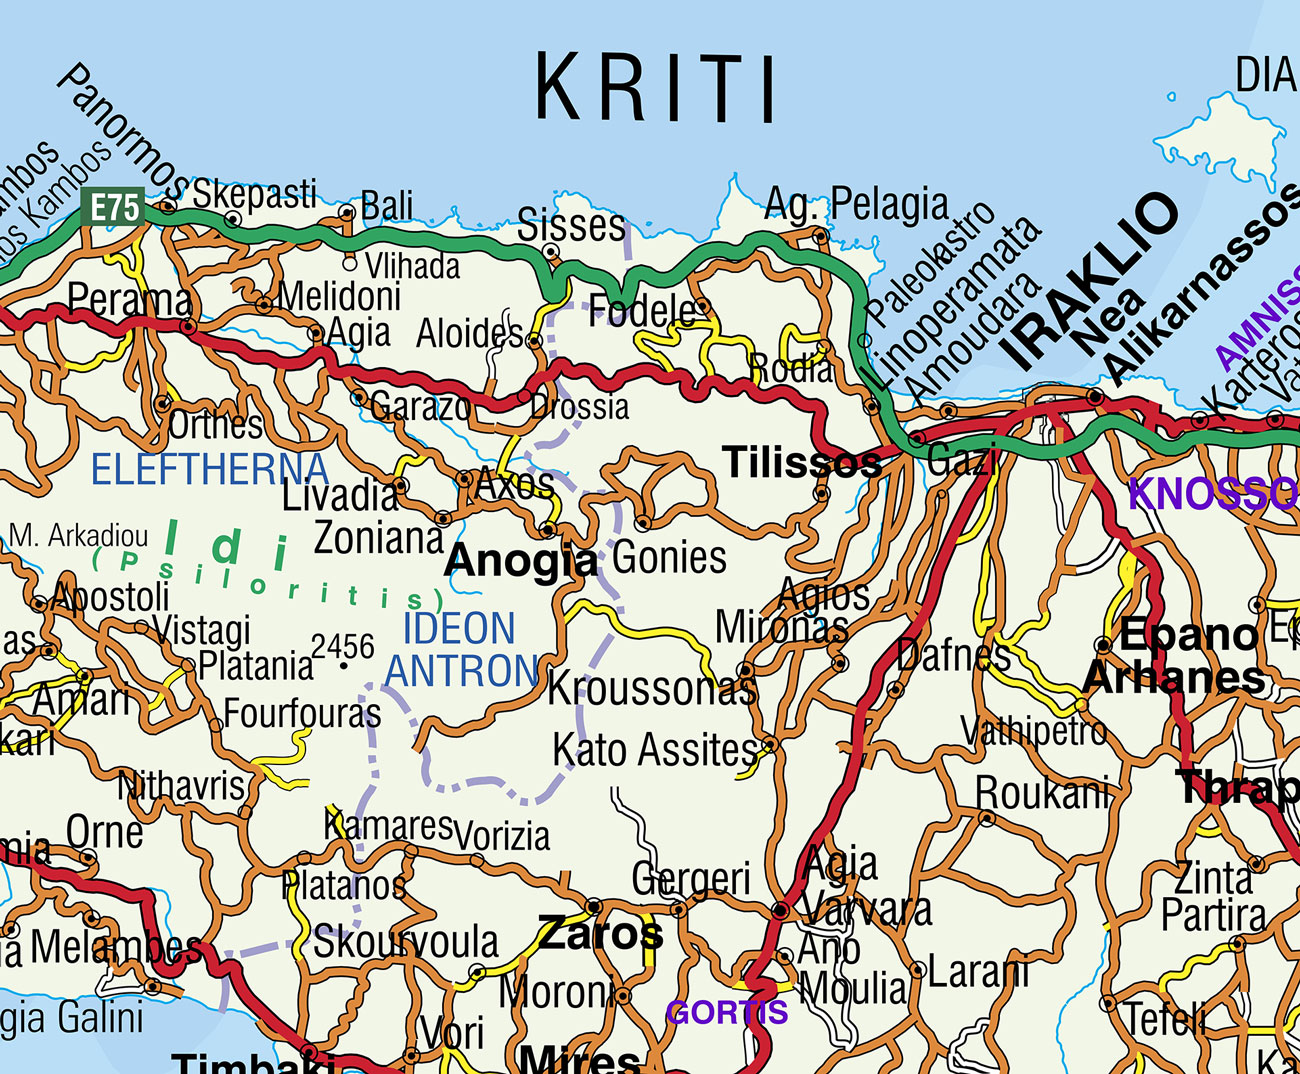 Χάρτης Κρήτης οδικός. Λεπτομερής οδικός χάρτης της Κρήτης με δρόμος μεγαλύτερες και μοκρότερες πολεις και χωριά της Κρήτης.